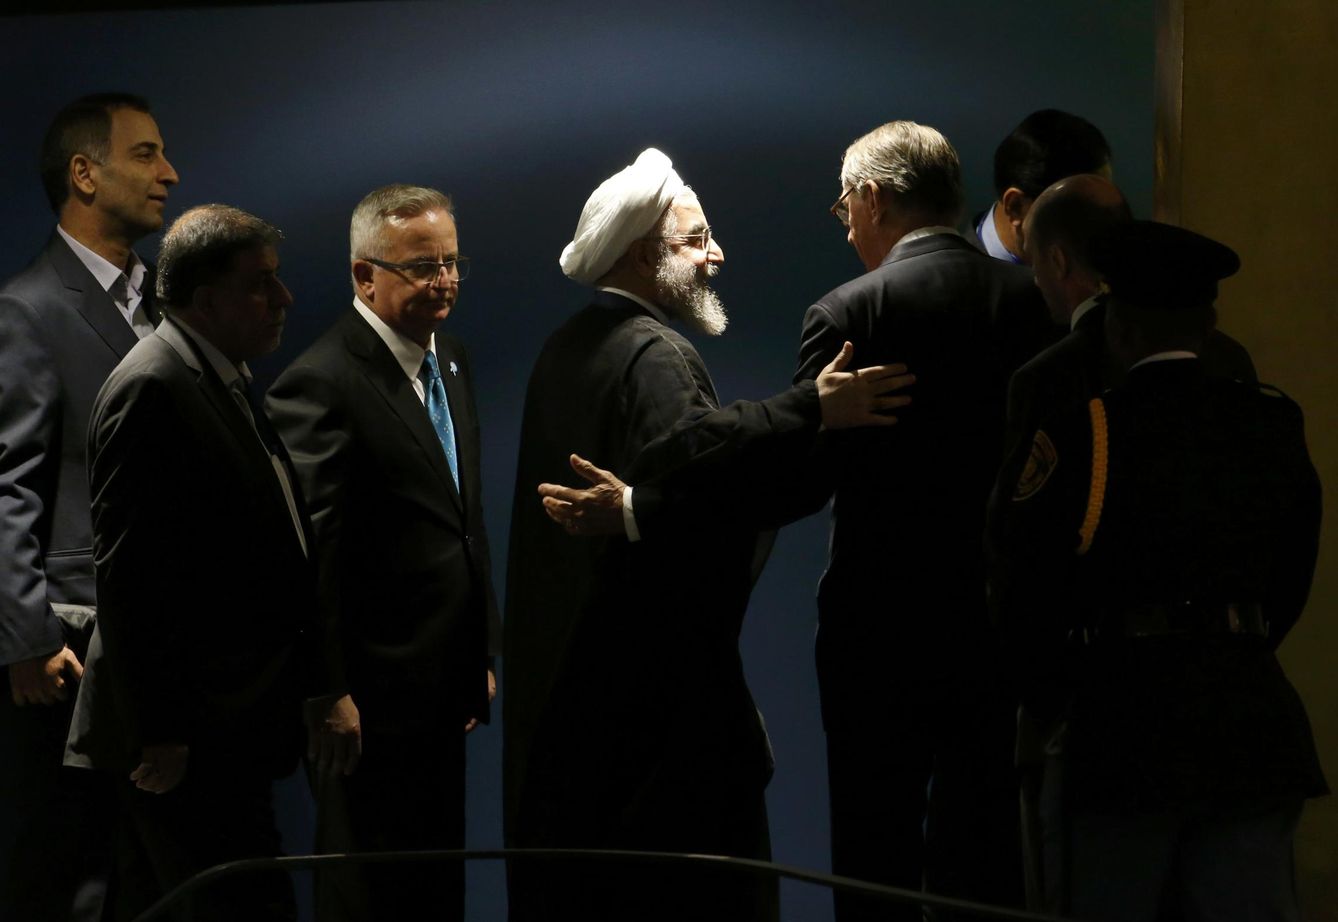 El presidente de Irán, Hasán Rouhani, saluda al subsecretario general de la ONU, Jan Eliasson, tras su discurso en la Asamblea General. (Reuters)